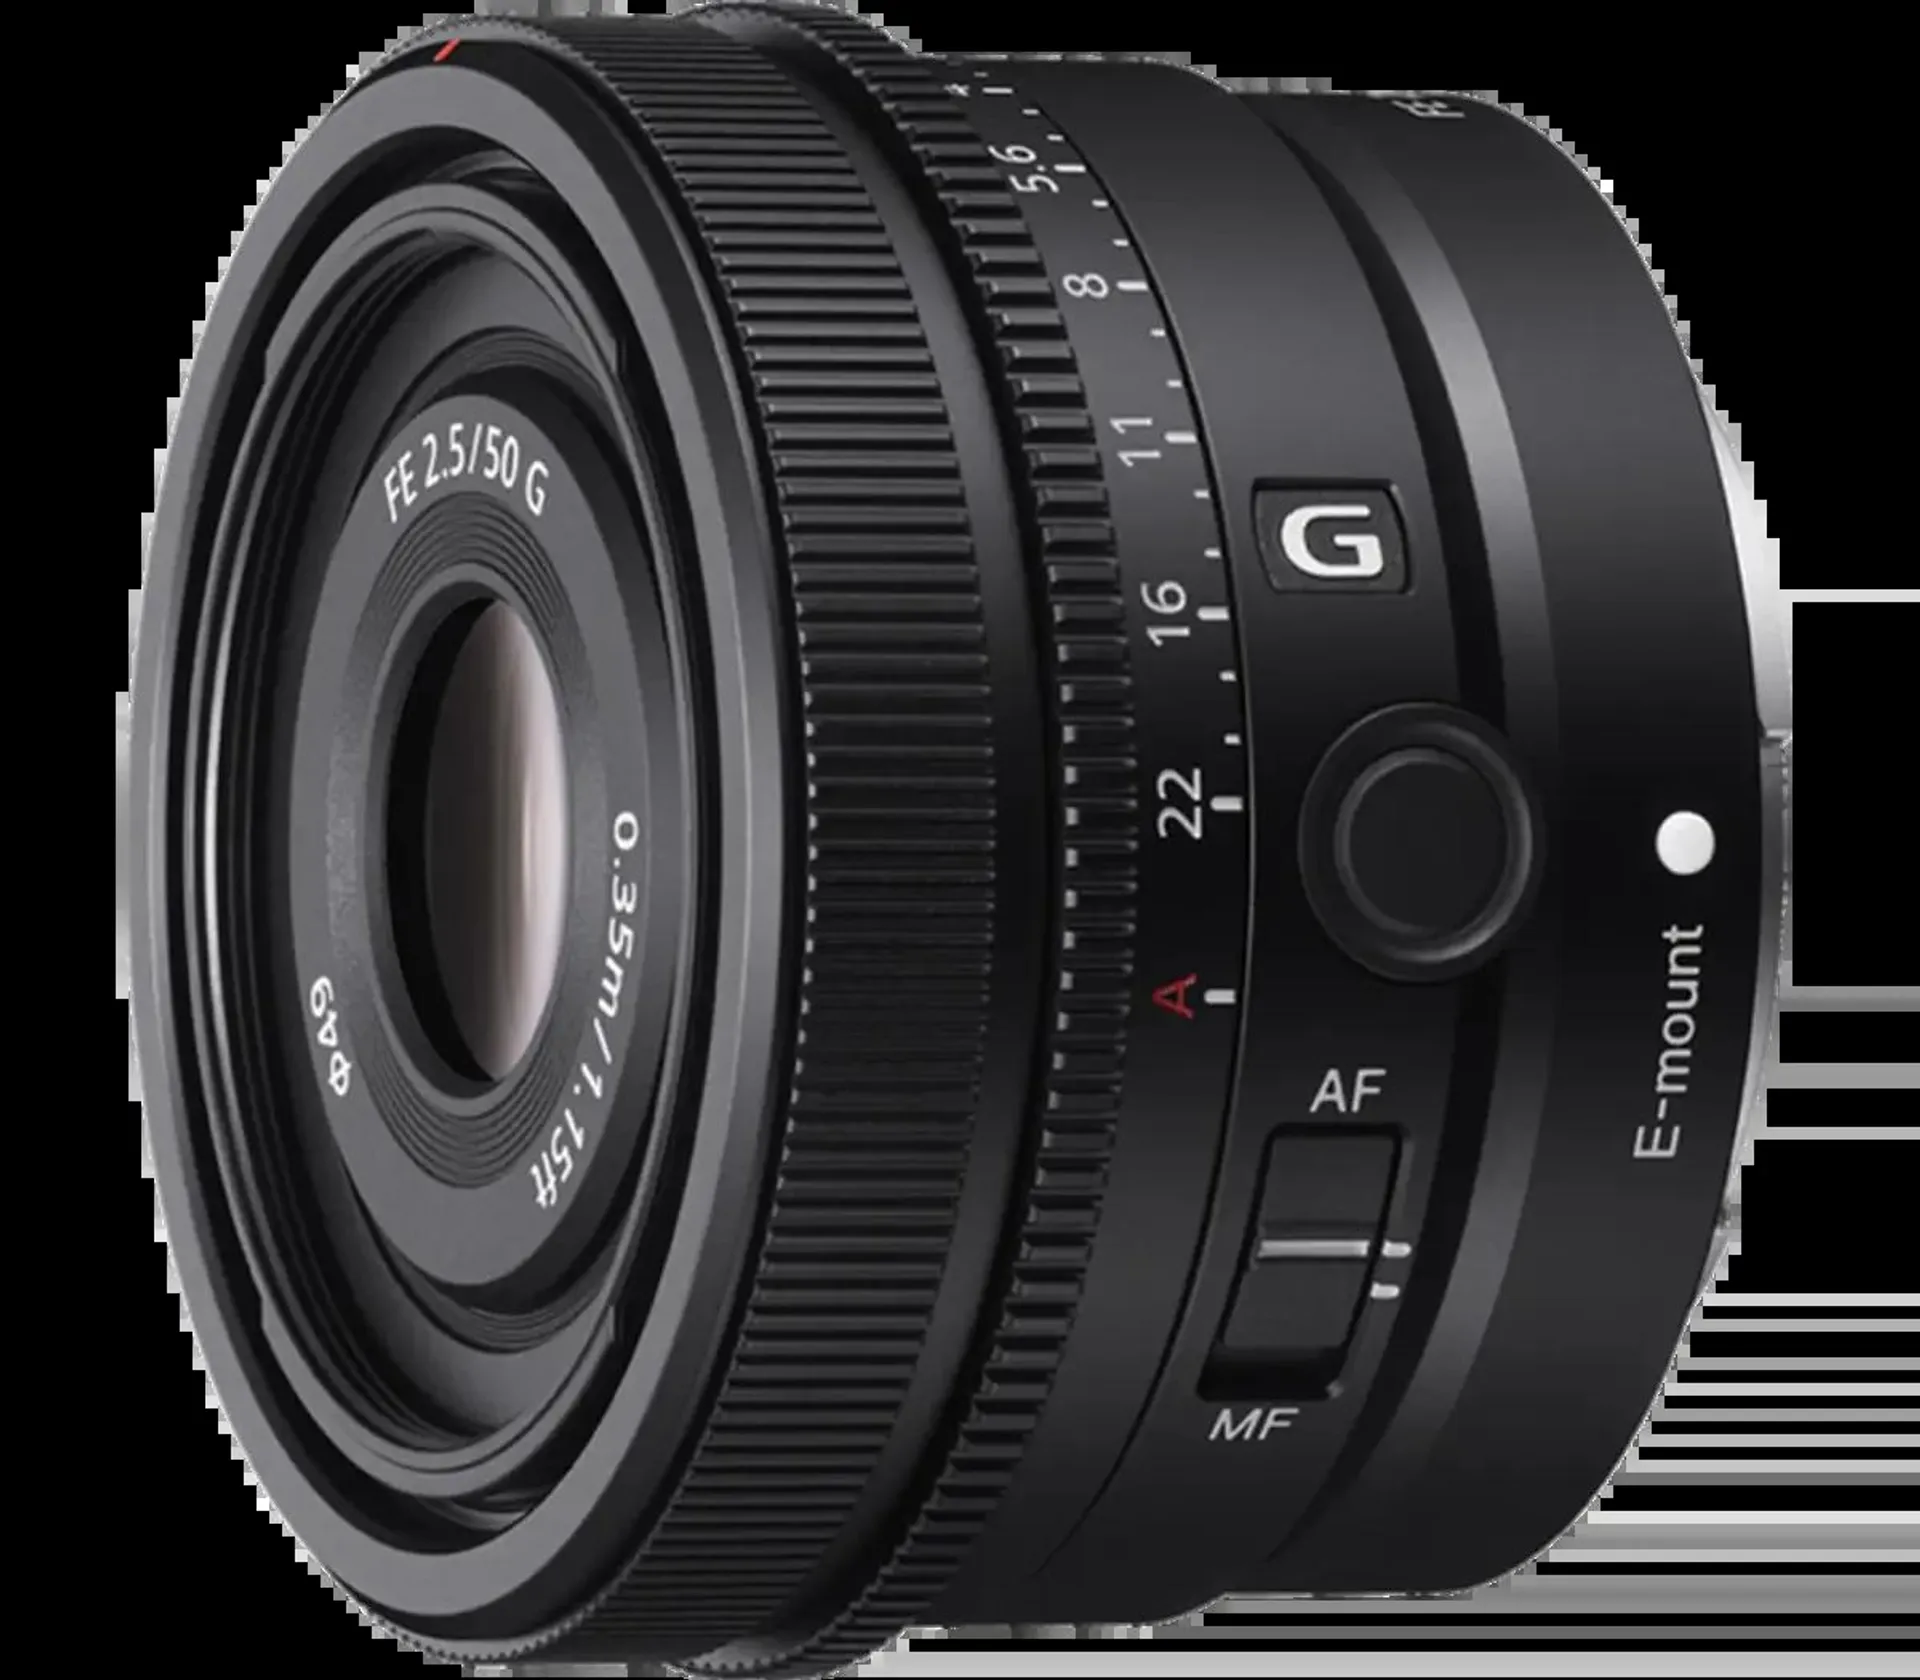 FE 50mm F2.5 G Full-frame Standard Prime G Lens